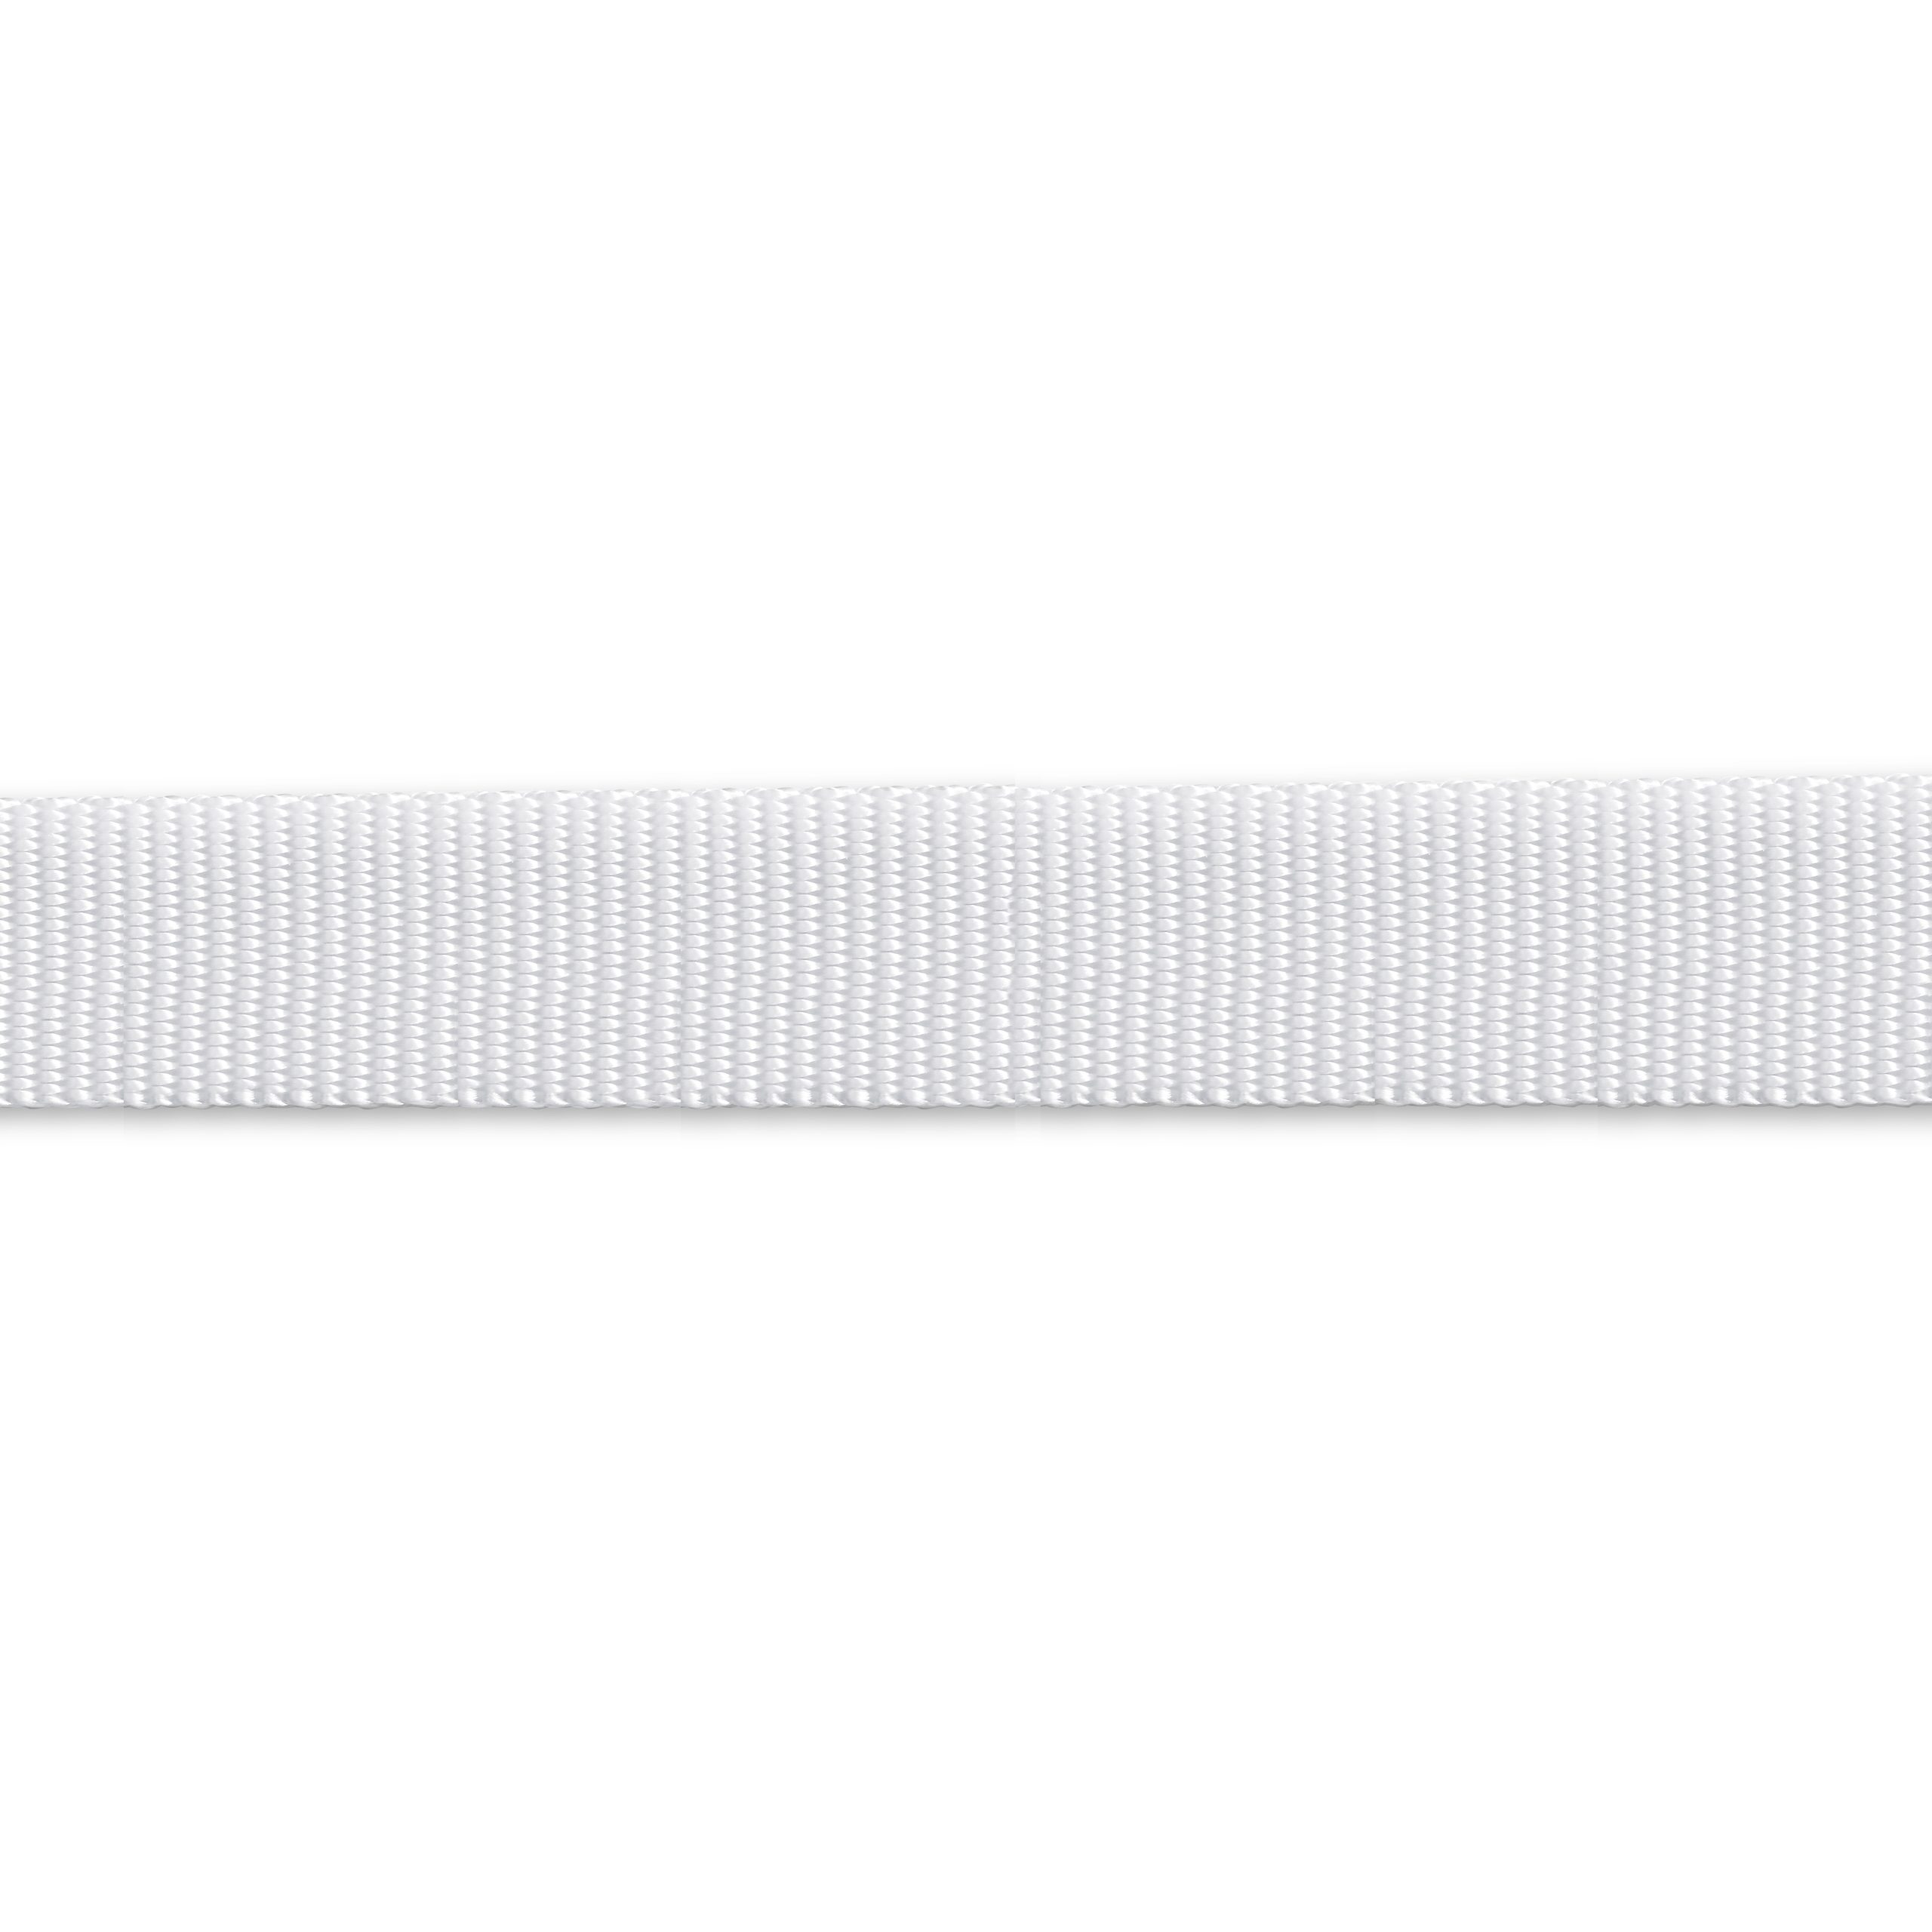 Gurtband für Rucksäcke 25 mm weiß, Meterware